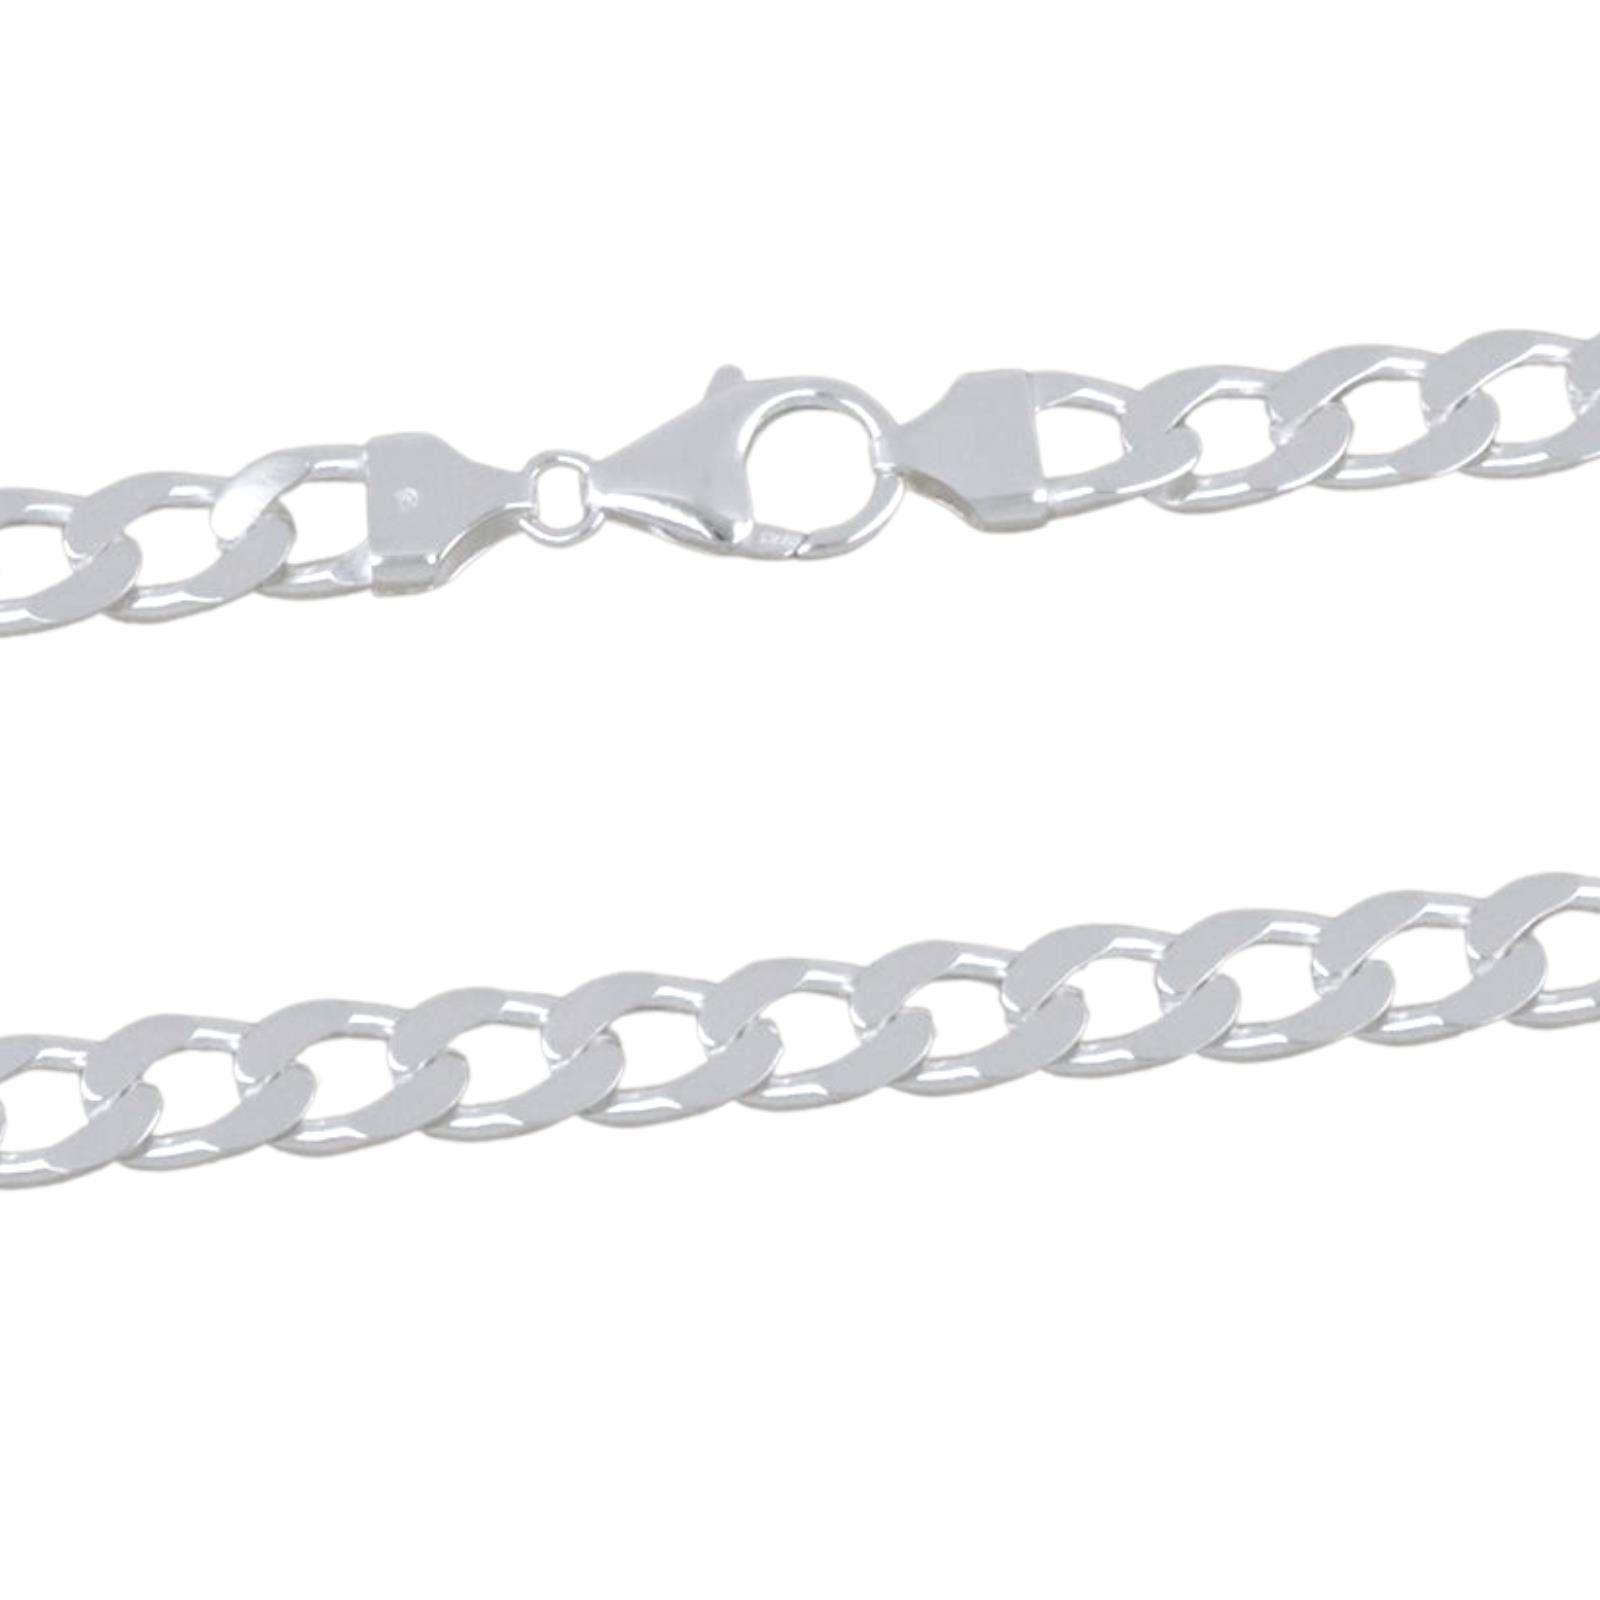 Herren und Panzerkette in Poliert Diamantiert 925er Silber Tony 7mm Halskette, Italy Made für Massiv Damen Panzerkette Fein